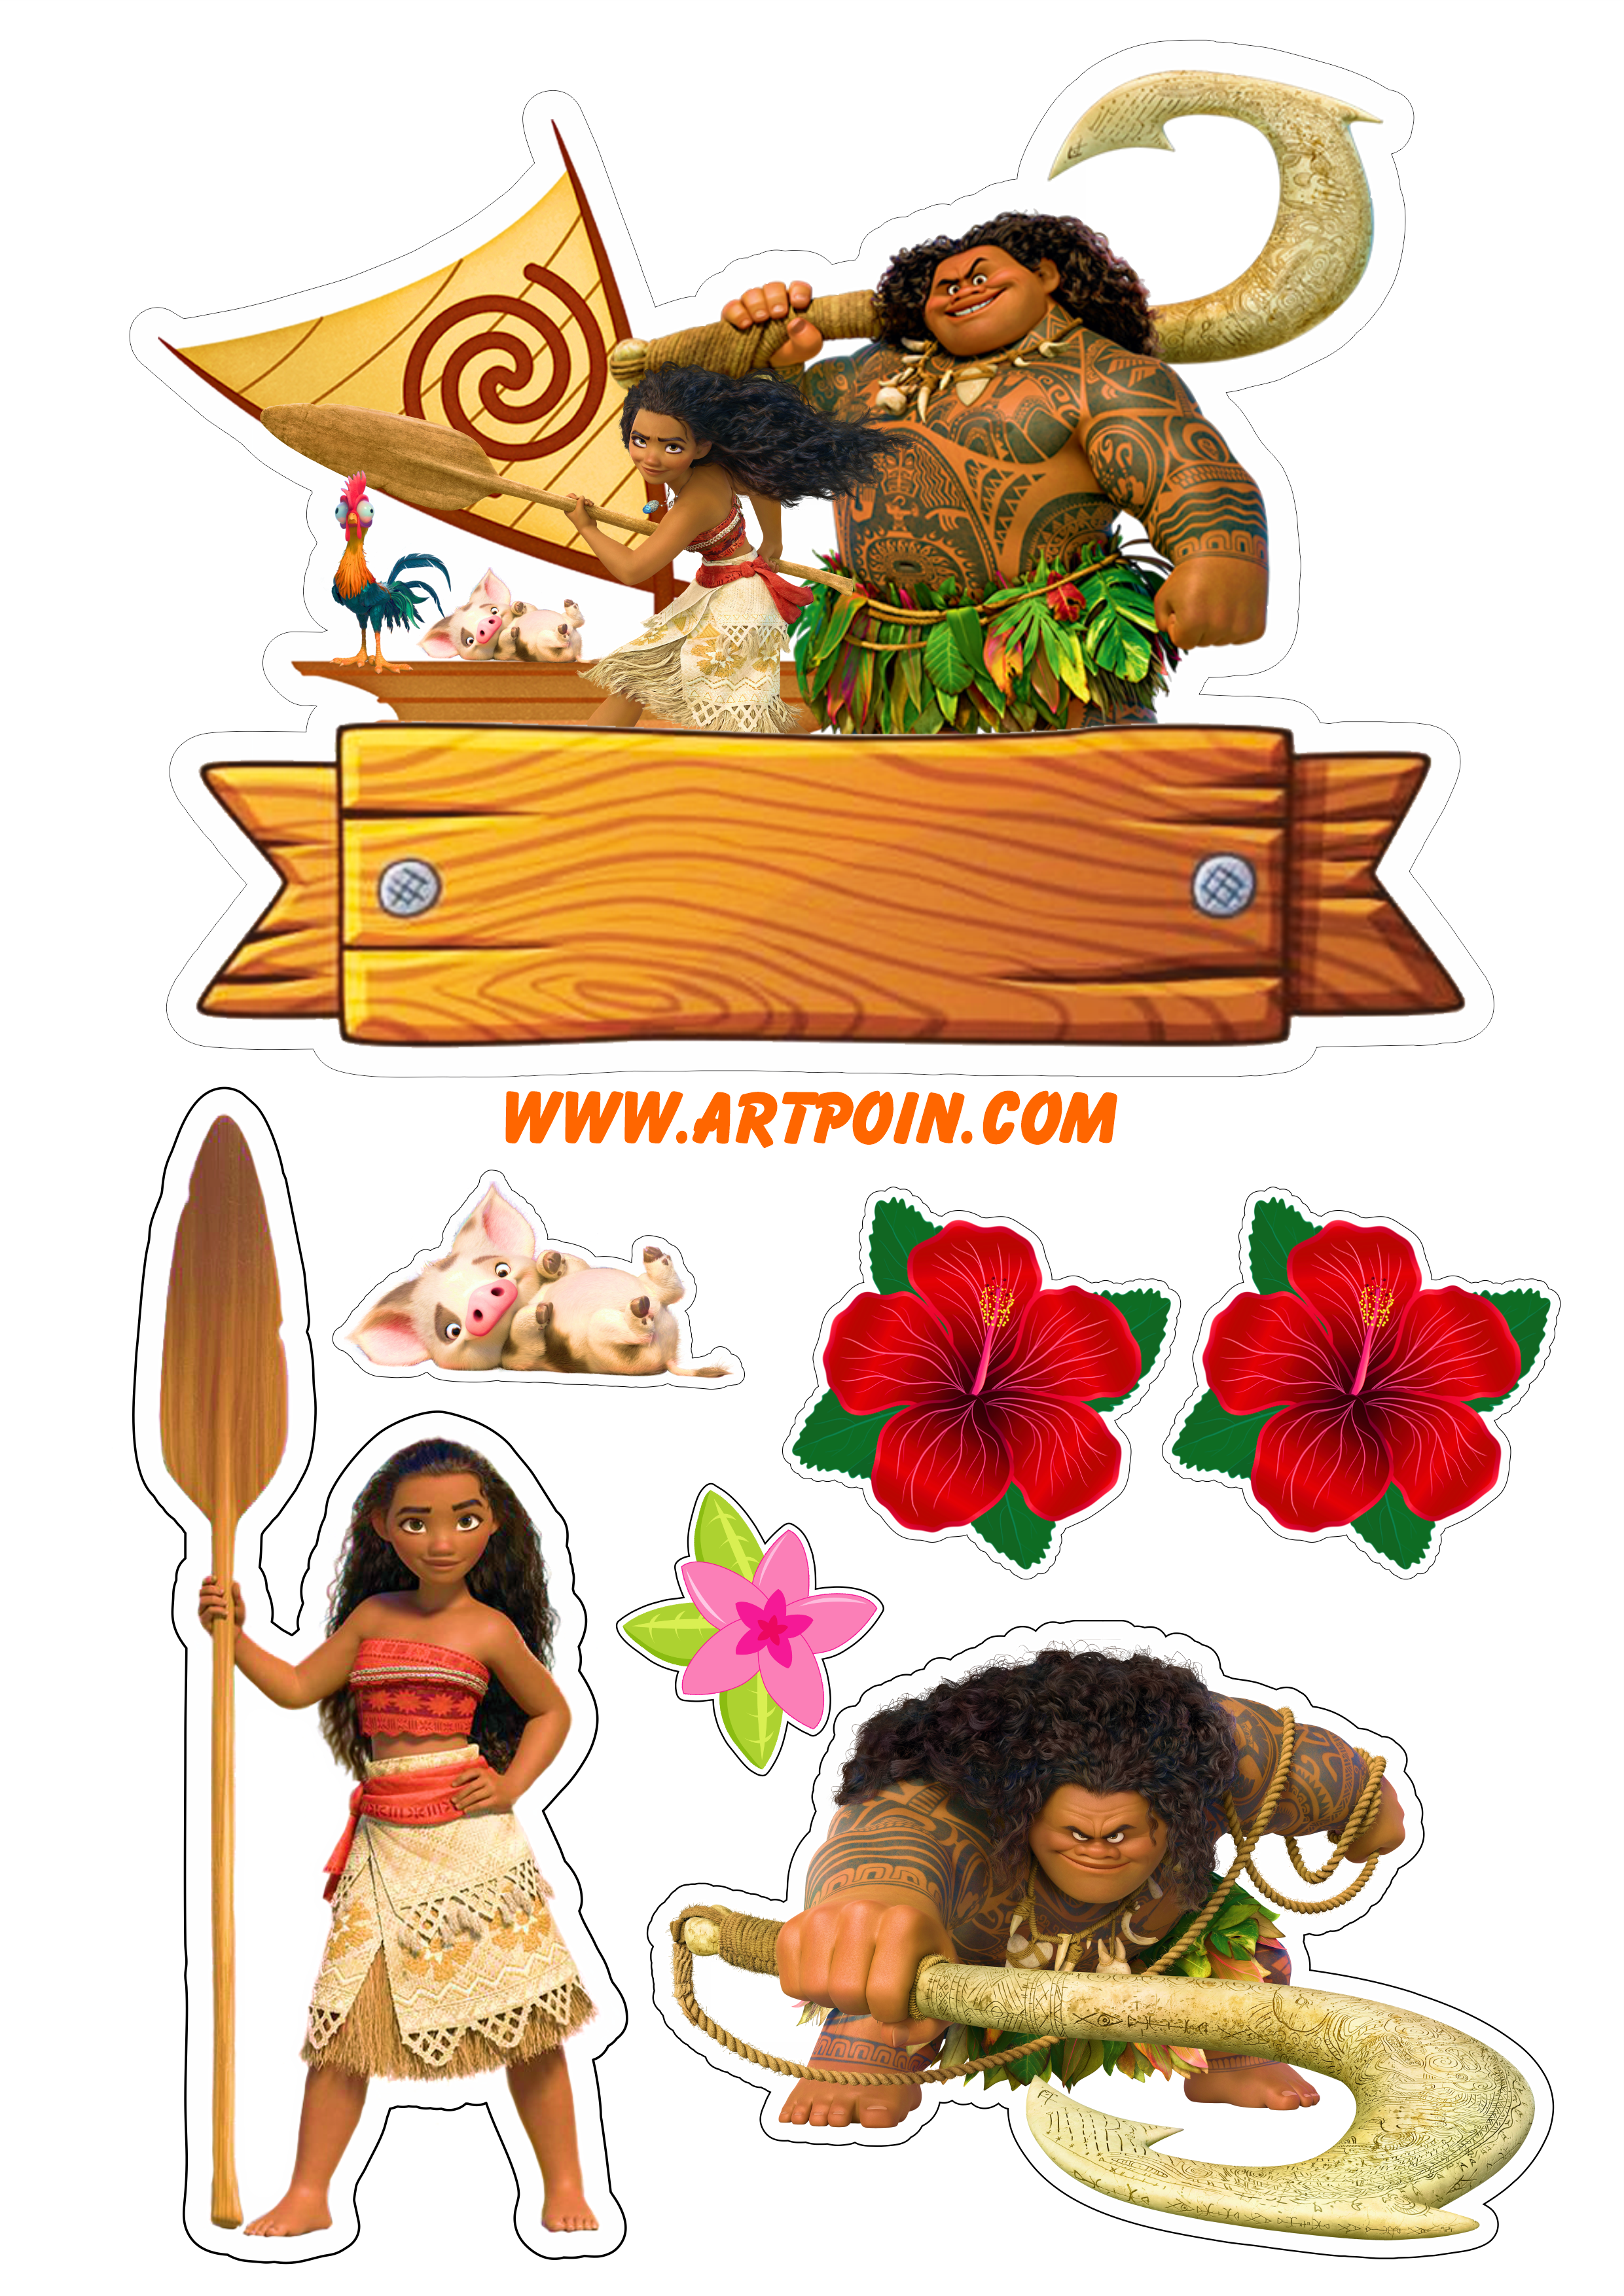 Topo de bolo para imprimir Moana e Maui animação disney decoração de festa de aniversário infantil papelaria png